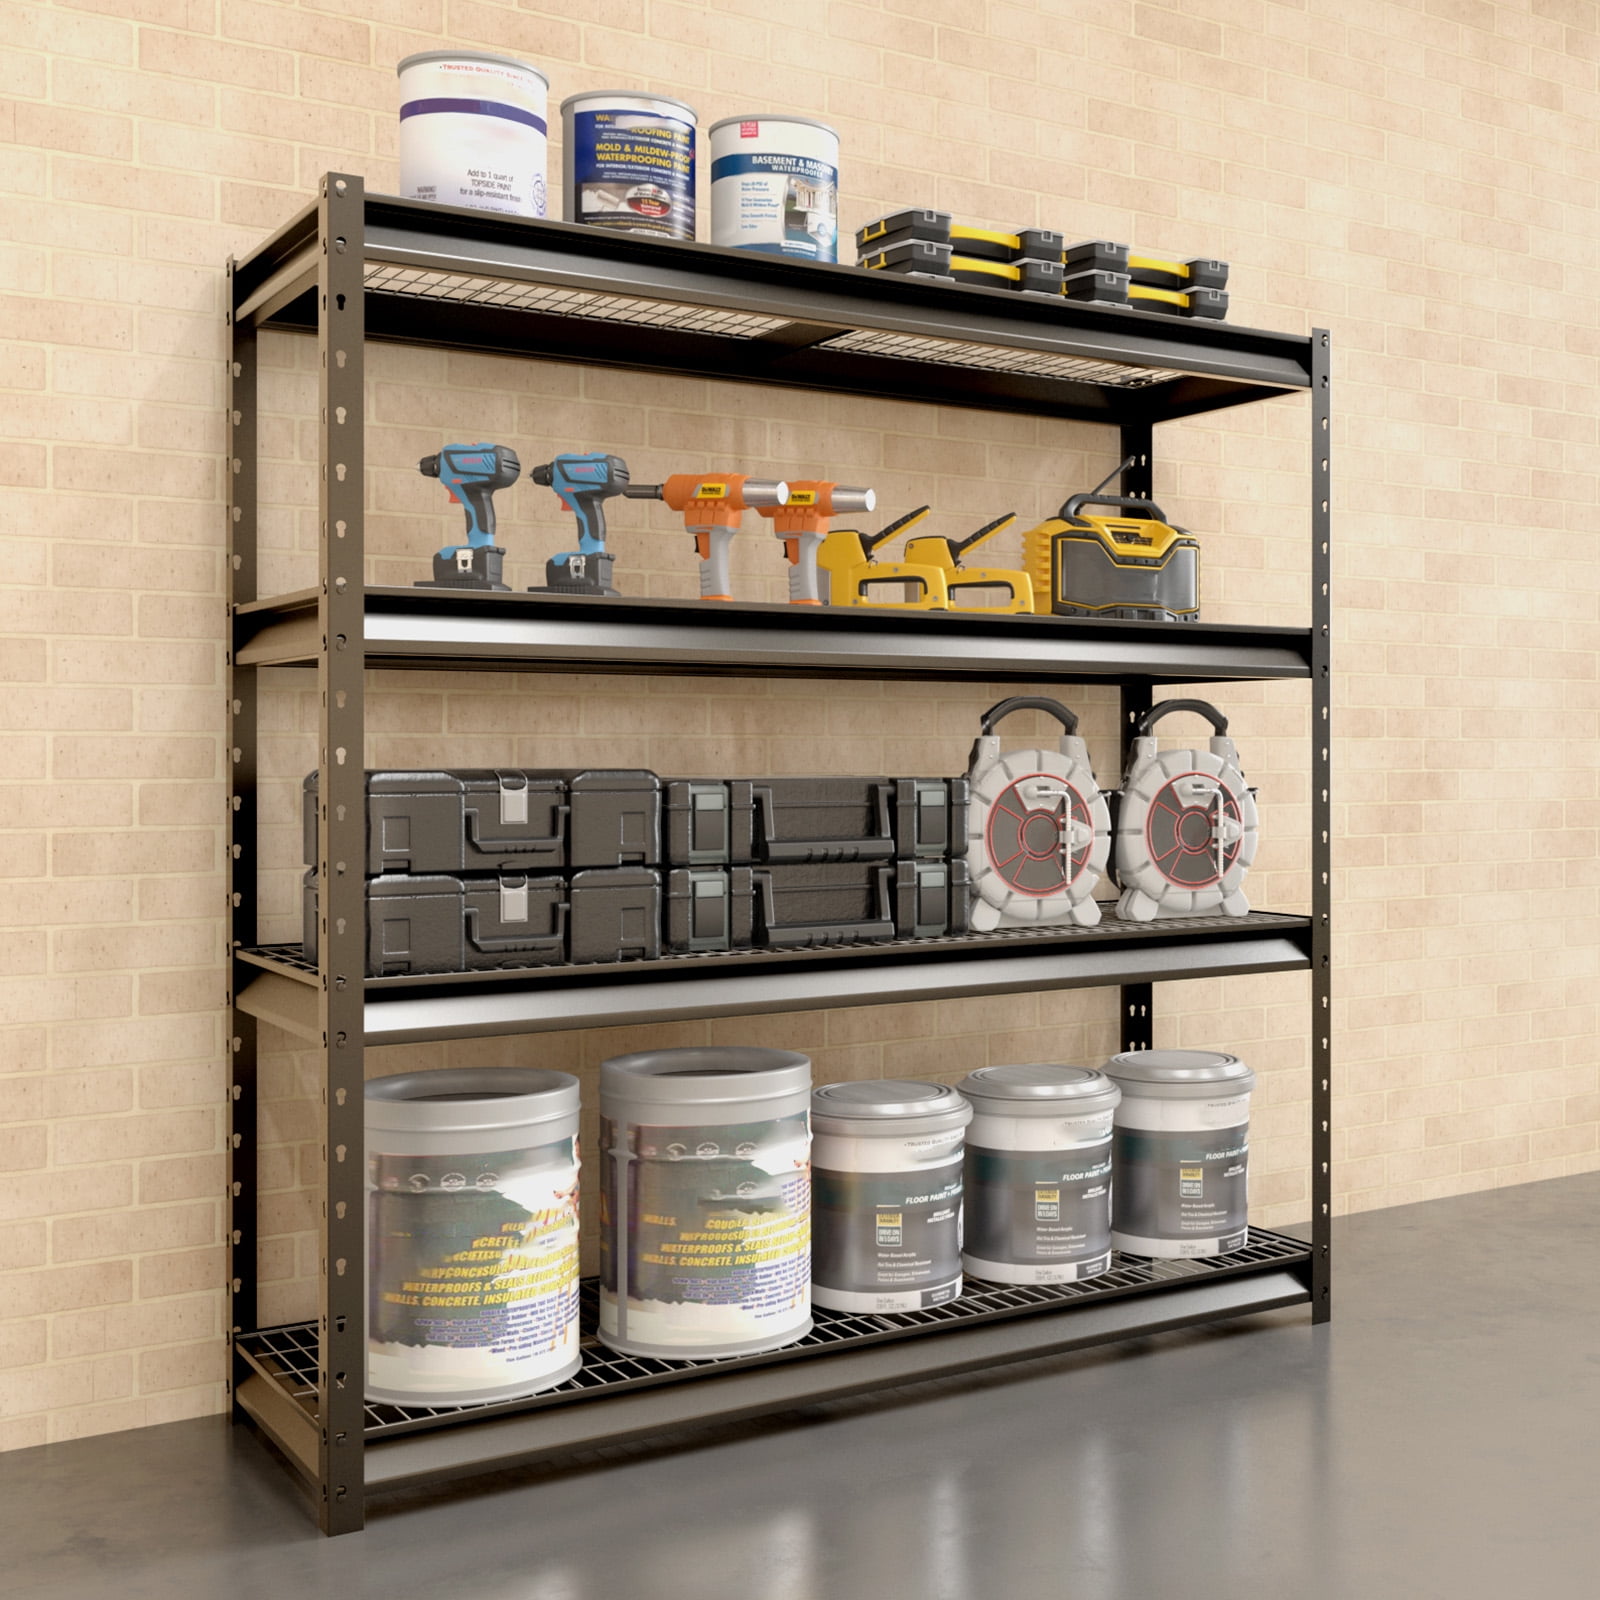 COOKCOK 5-Tier Storage Shelving Unit, Heavy Duty Metal Shelf  27.9x13.4x62.5, Foldable Storage Shelf with Wheels, Garage Shelf, Metal  Storage Rack